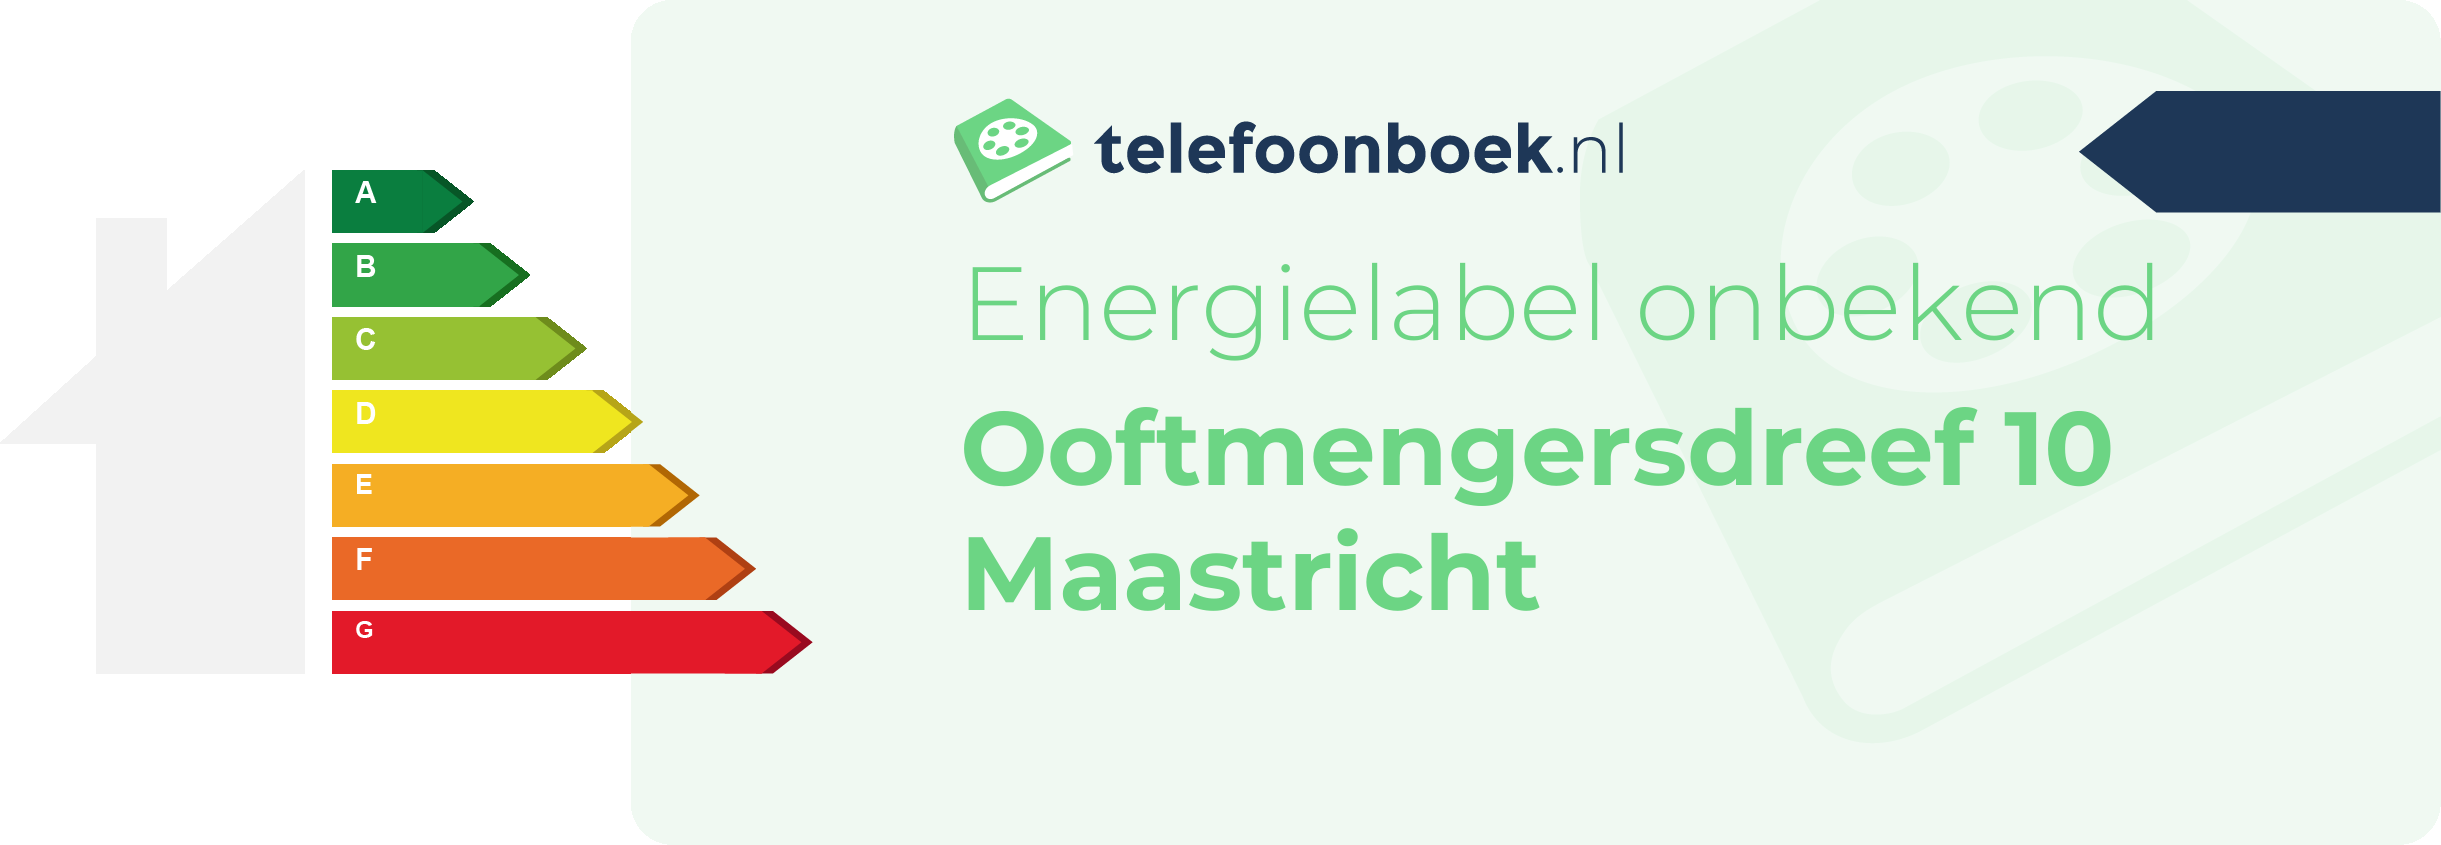 Energielabel Ooftmengersdreef 10 Maastricht